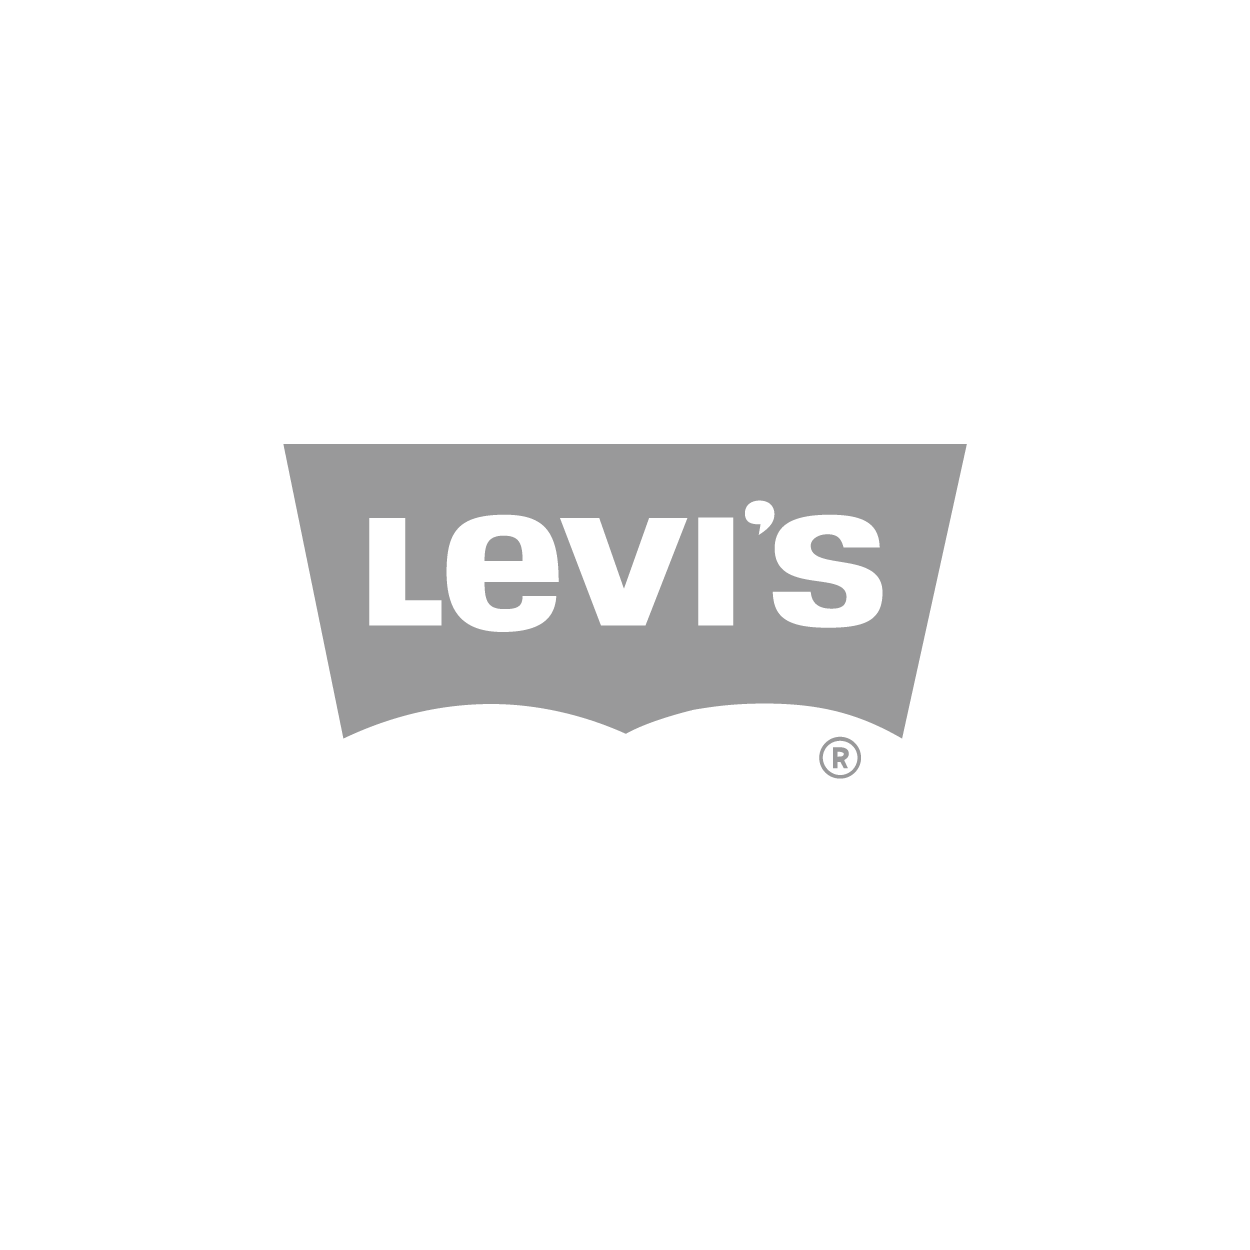 levis-01.png